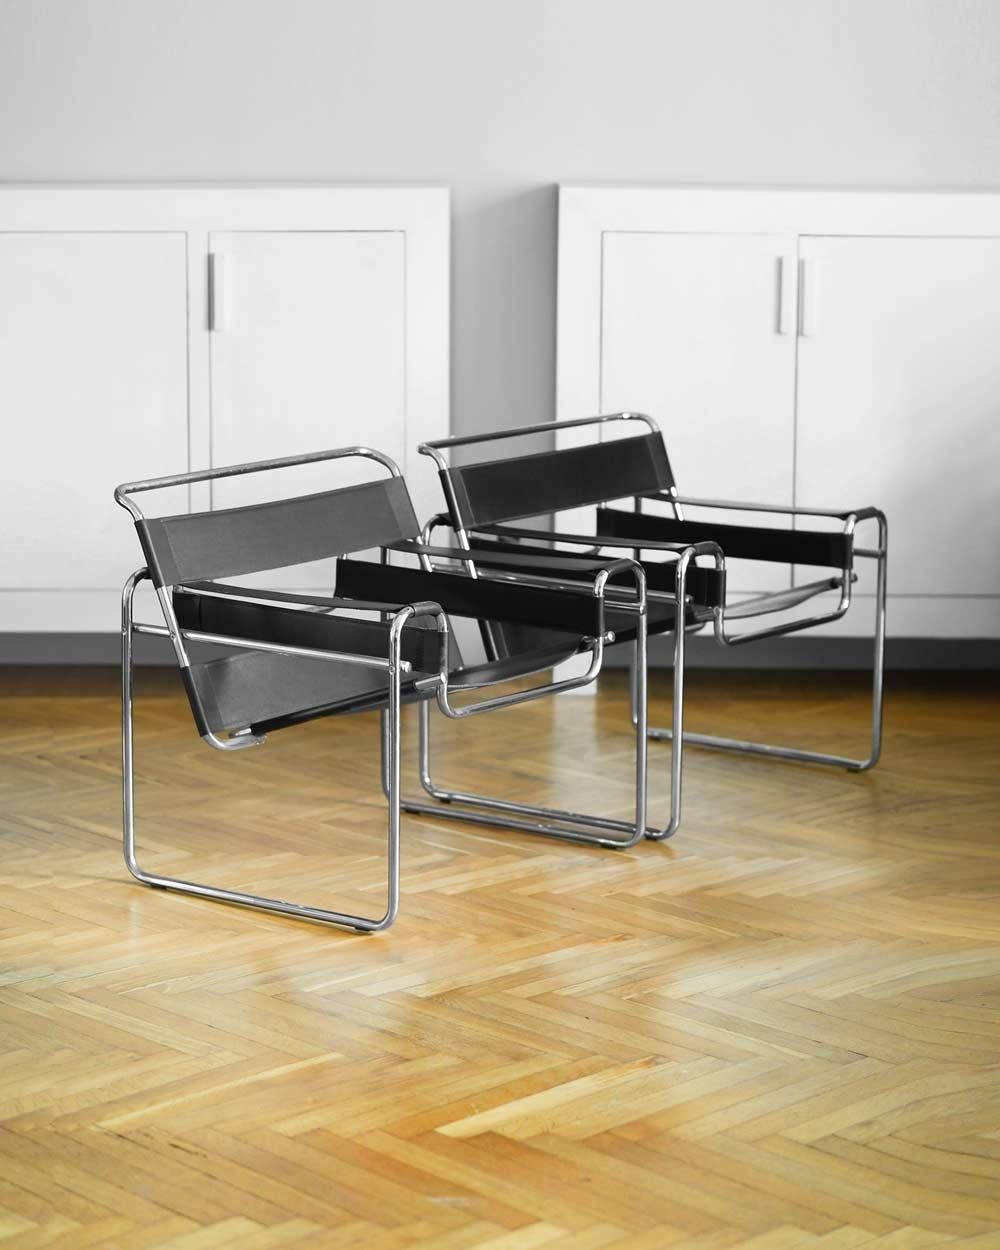 Ensemble de 2 fauteuils dans le style Wassily de Marcel Breuer, en cuir et métal, 1970.
Dimensions : 78W x 74H x 67D cm
Matériaux : métal, cuir.